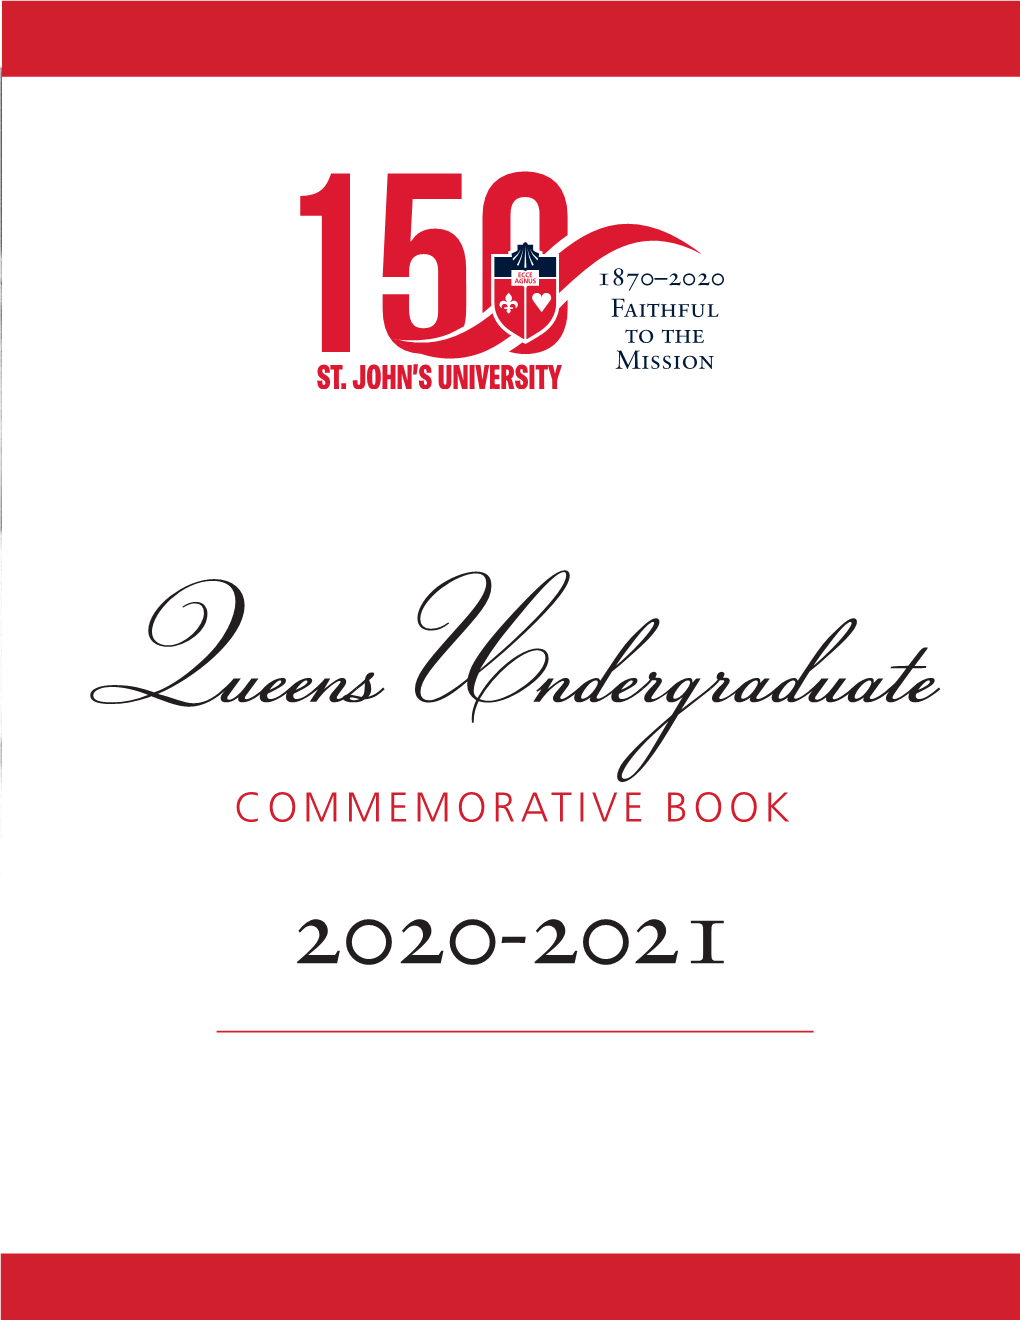 Commemorative Book 2020-2021 St